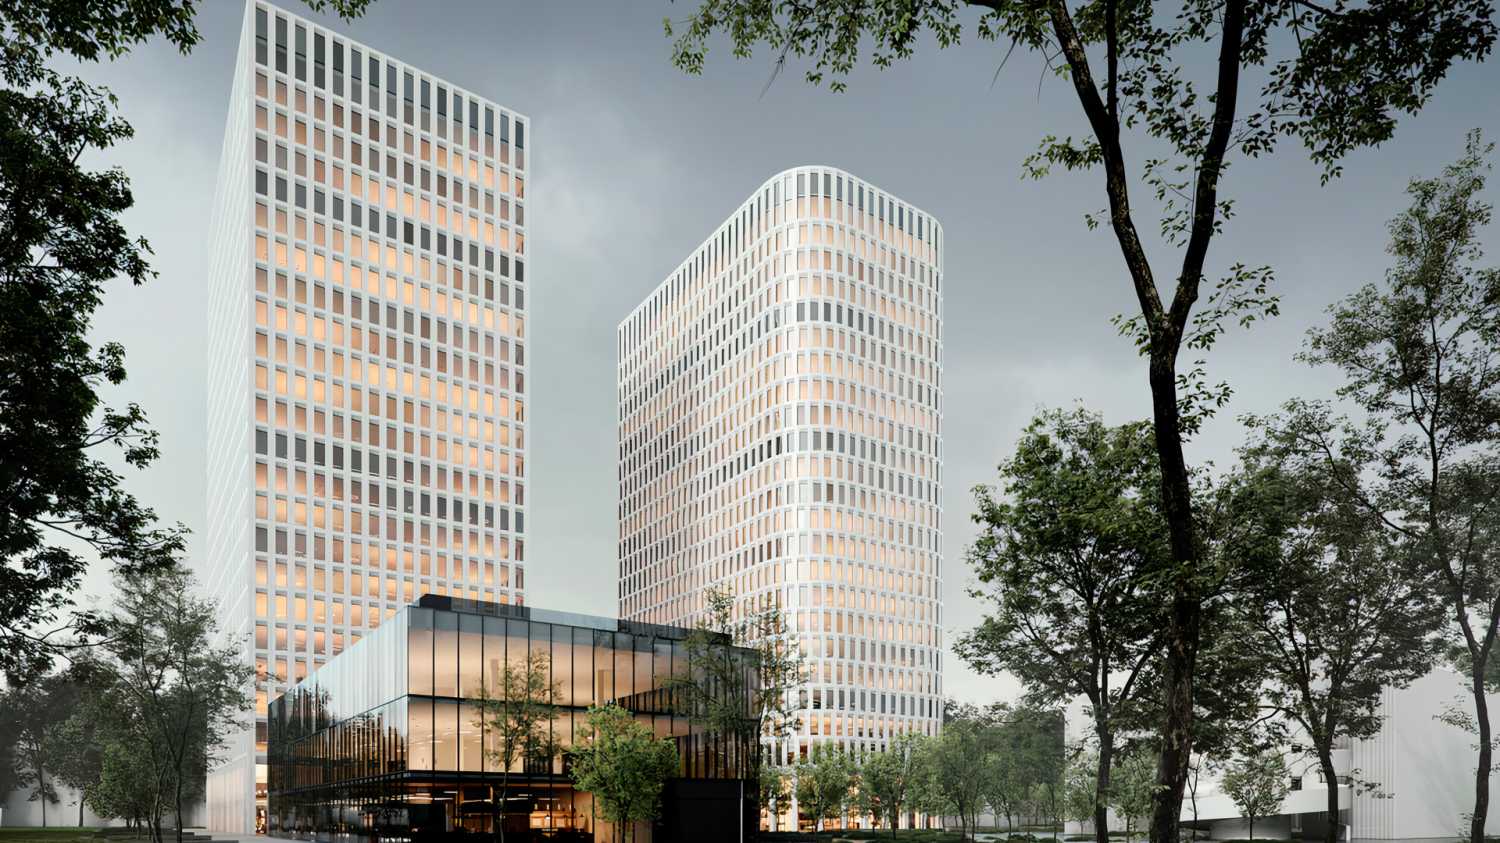 Stone Савеловская — бизнес-центр класса А из 2-х башен высотой 4-24 этажа в районе Марьина Роща.